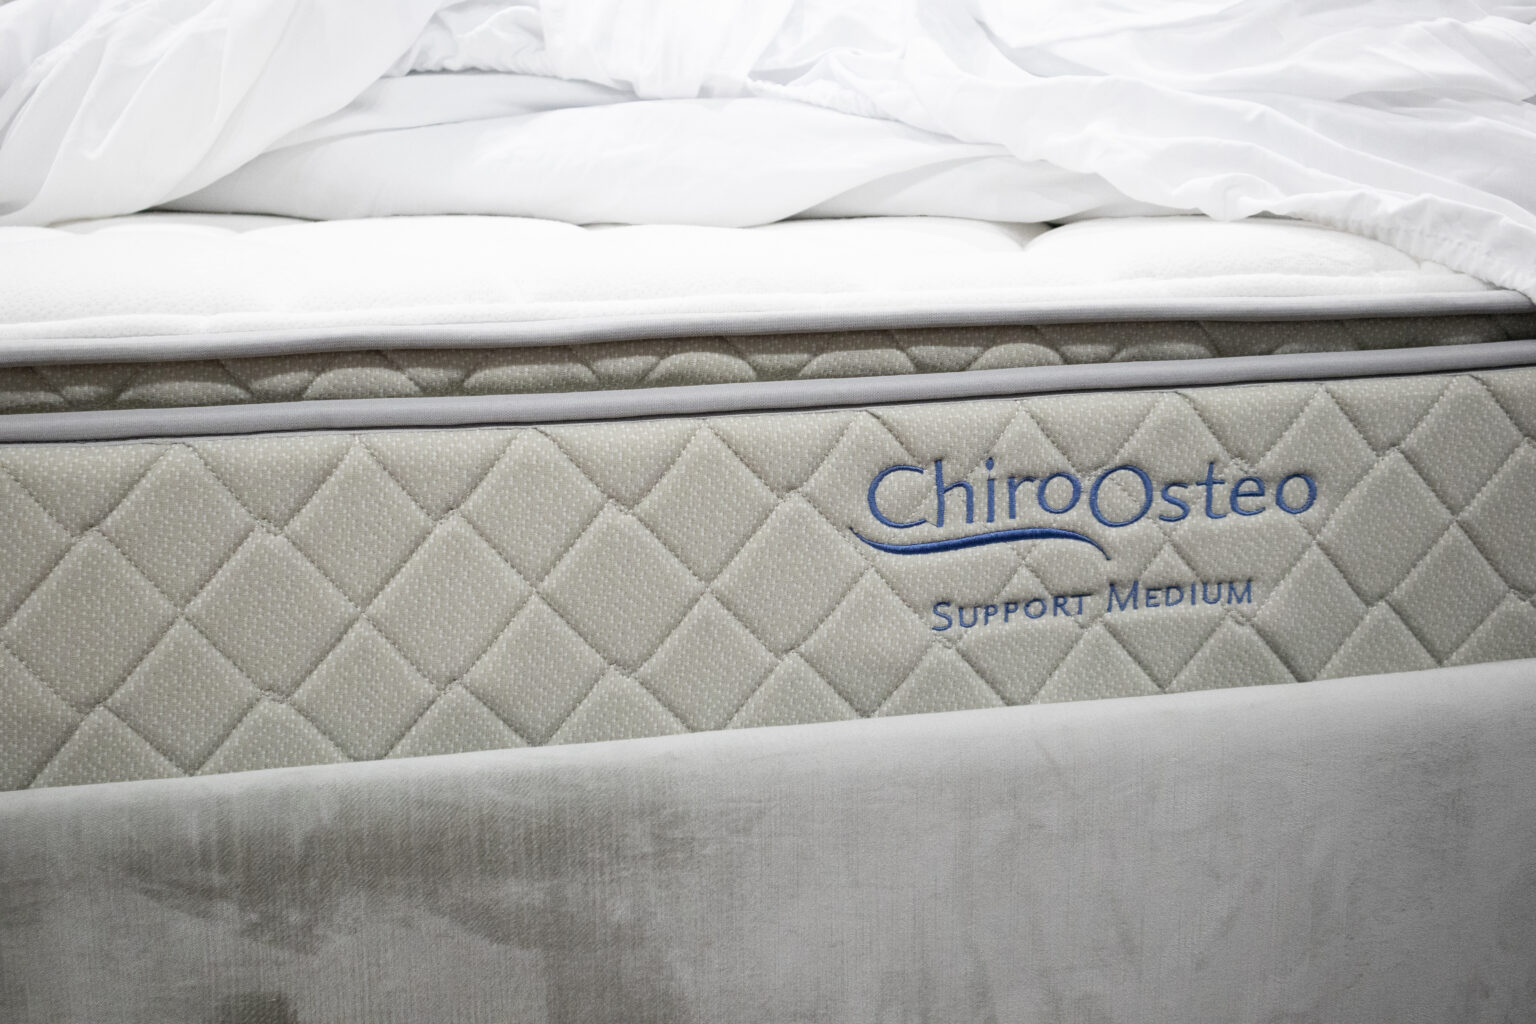 chiro osteo king size mattress